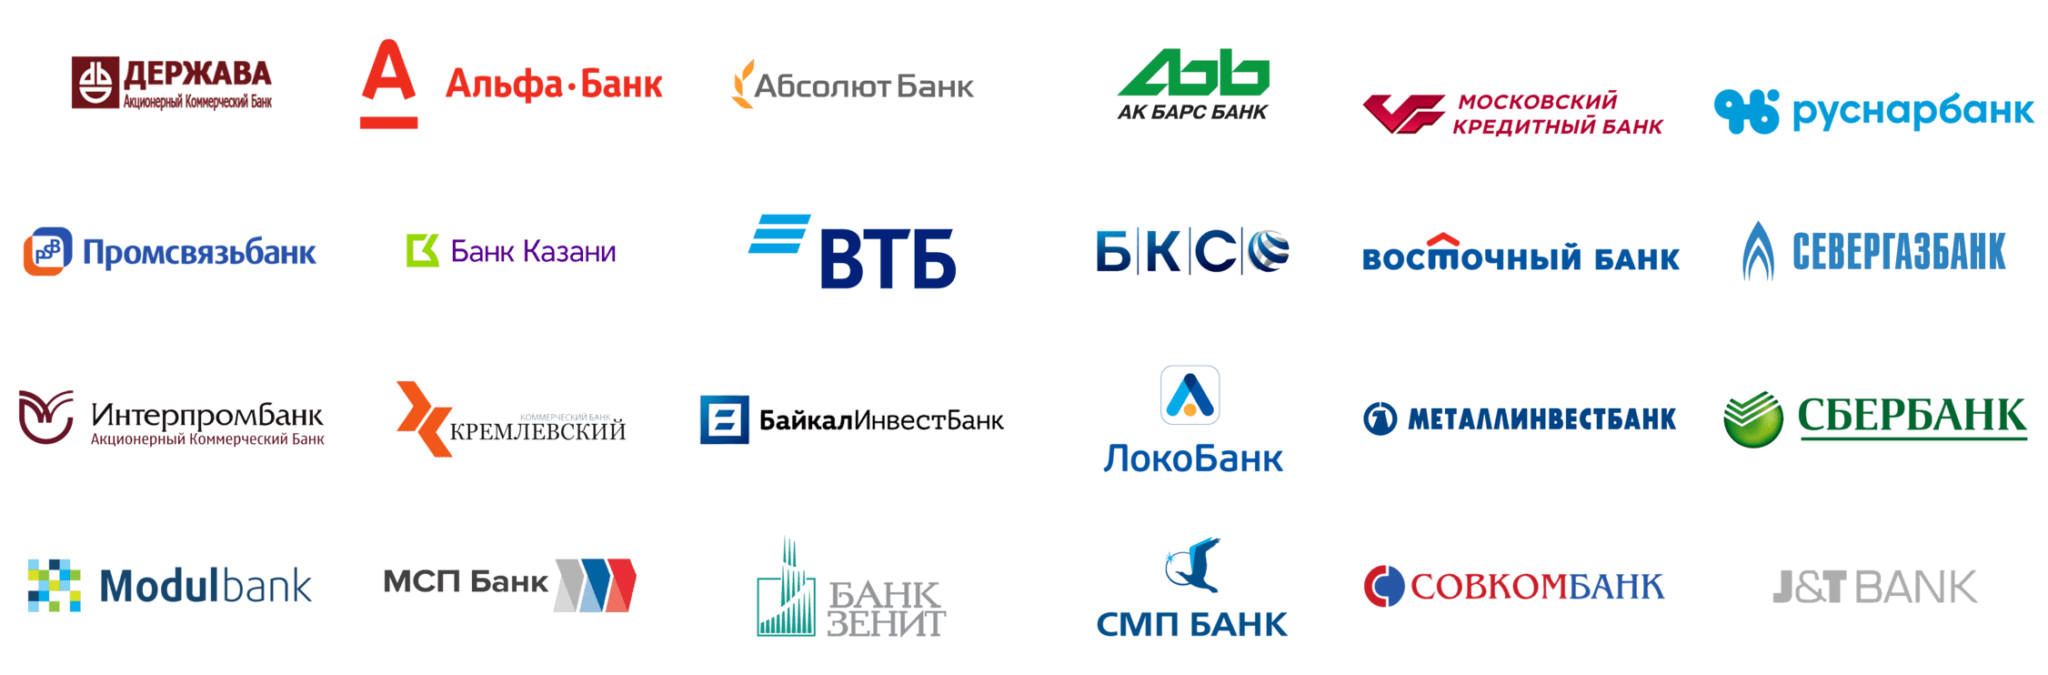 Втб банк банки партнеры внесение наличных. Банки партнеры. Логотипы банков. Партнёры ВТБ банка. Банки партнеры список.